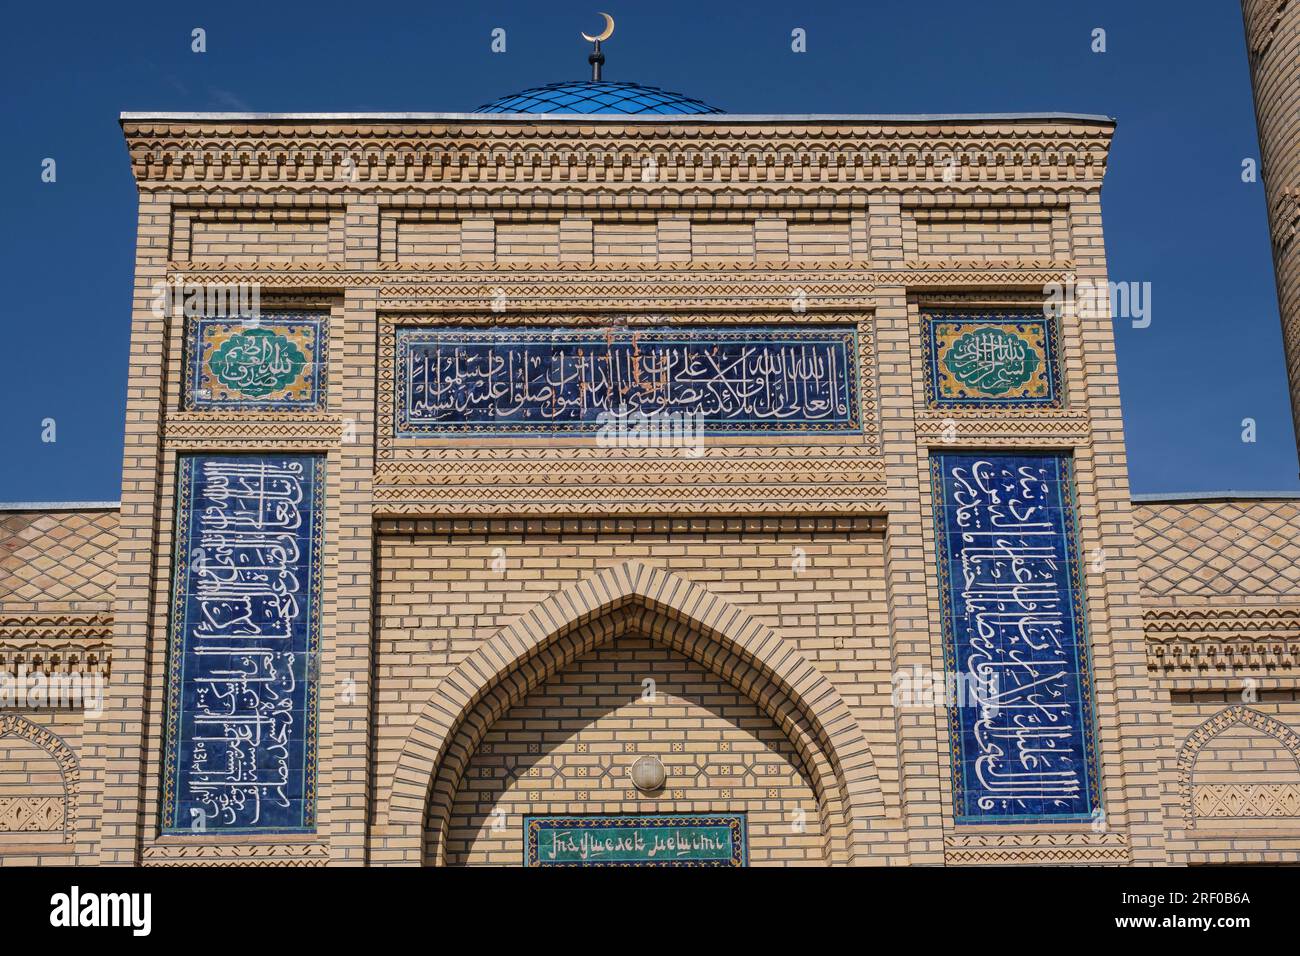 Kazakistan, ingresso decorativo della moschea di Saty Village. Foto Stock